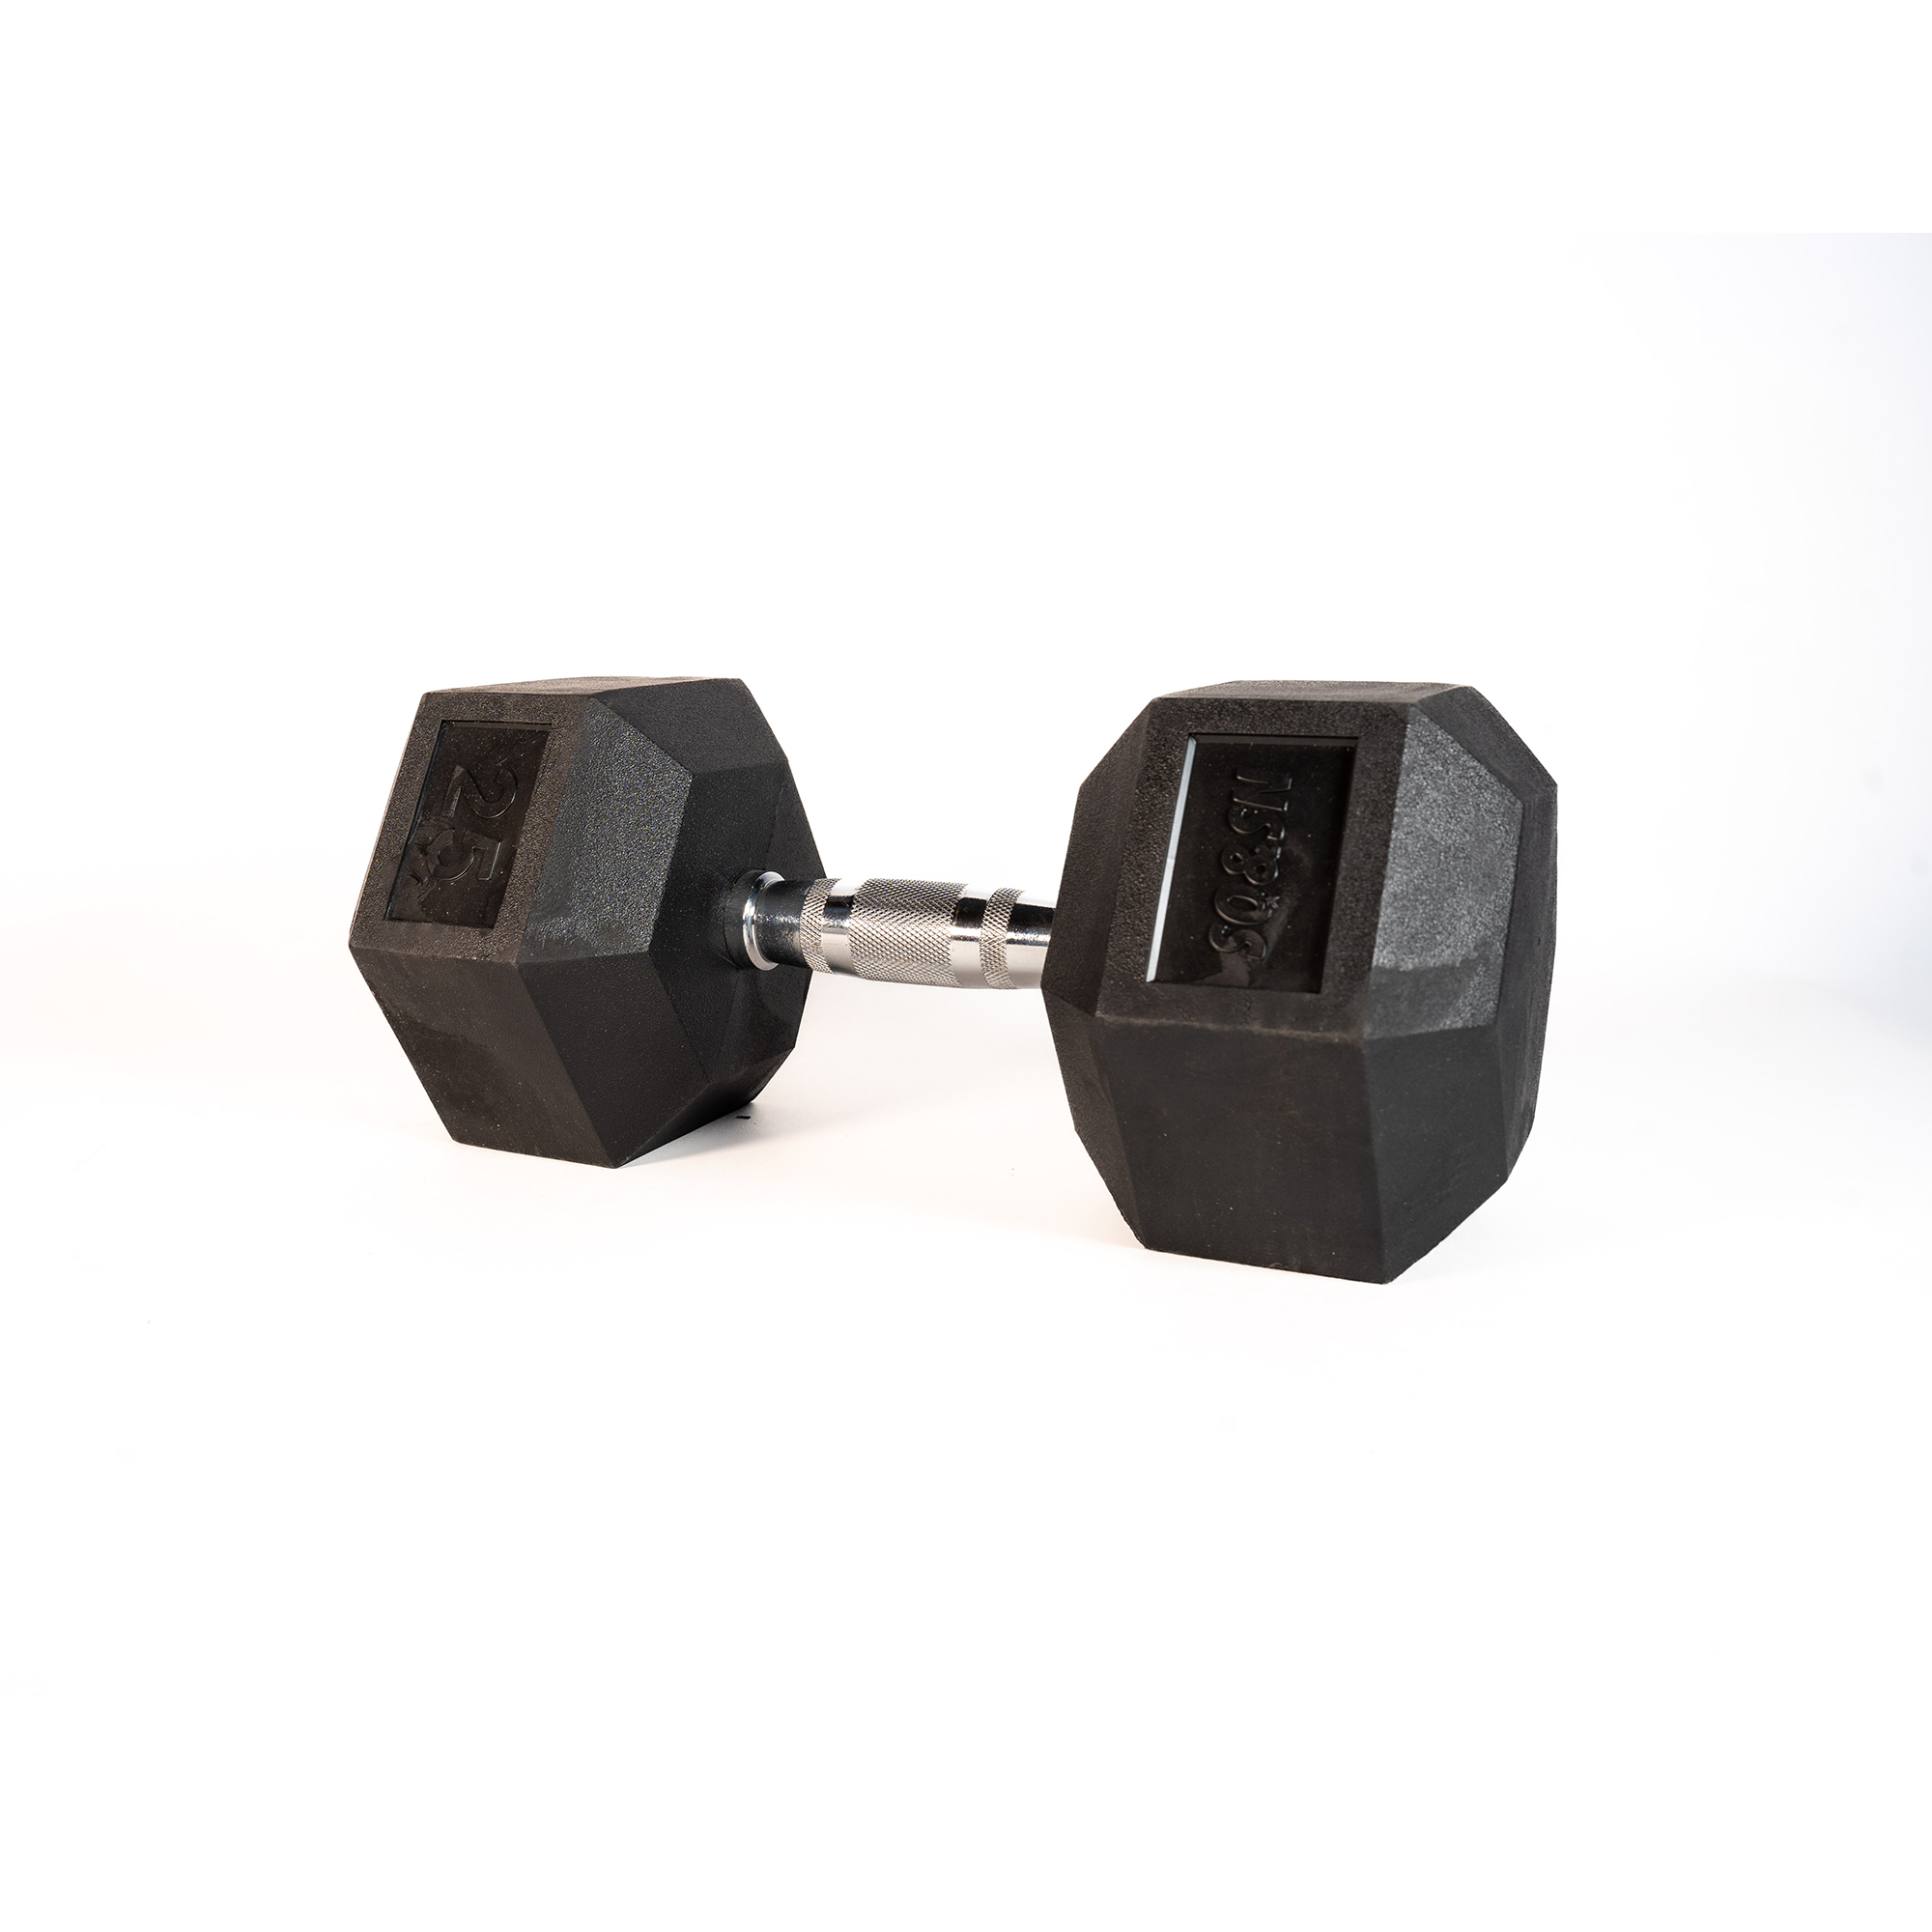 Brug SQ&SN Hexagon Håndvægt (25 kg) med forkromet greb. Udstyr til crossfit træning, styrketræning og funktionel træning til en forbedret oplevelse